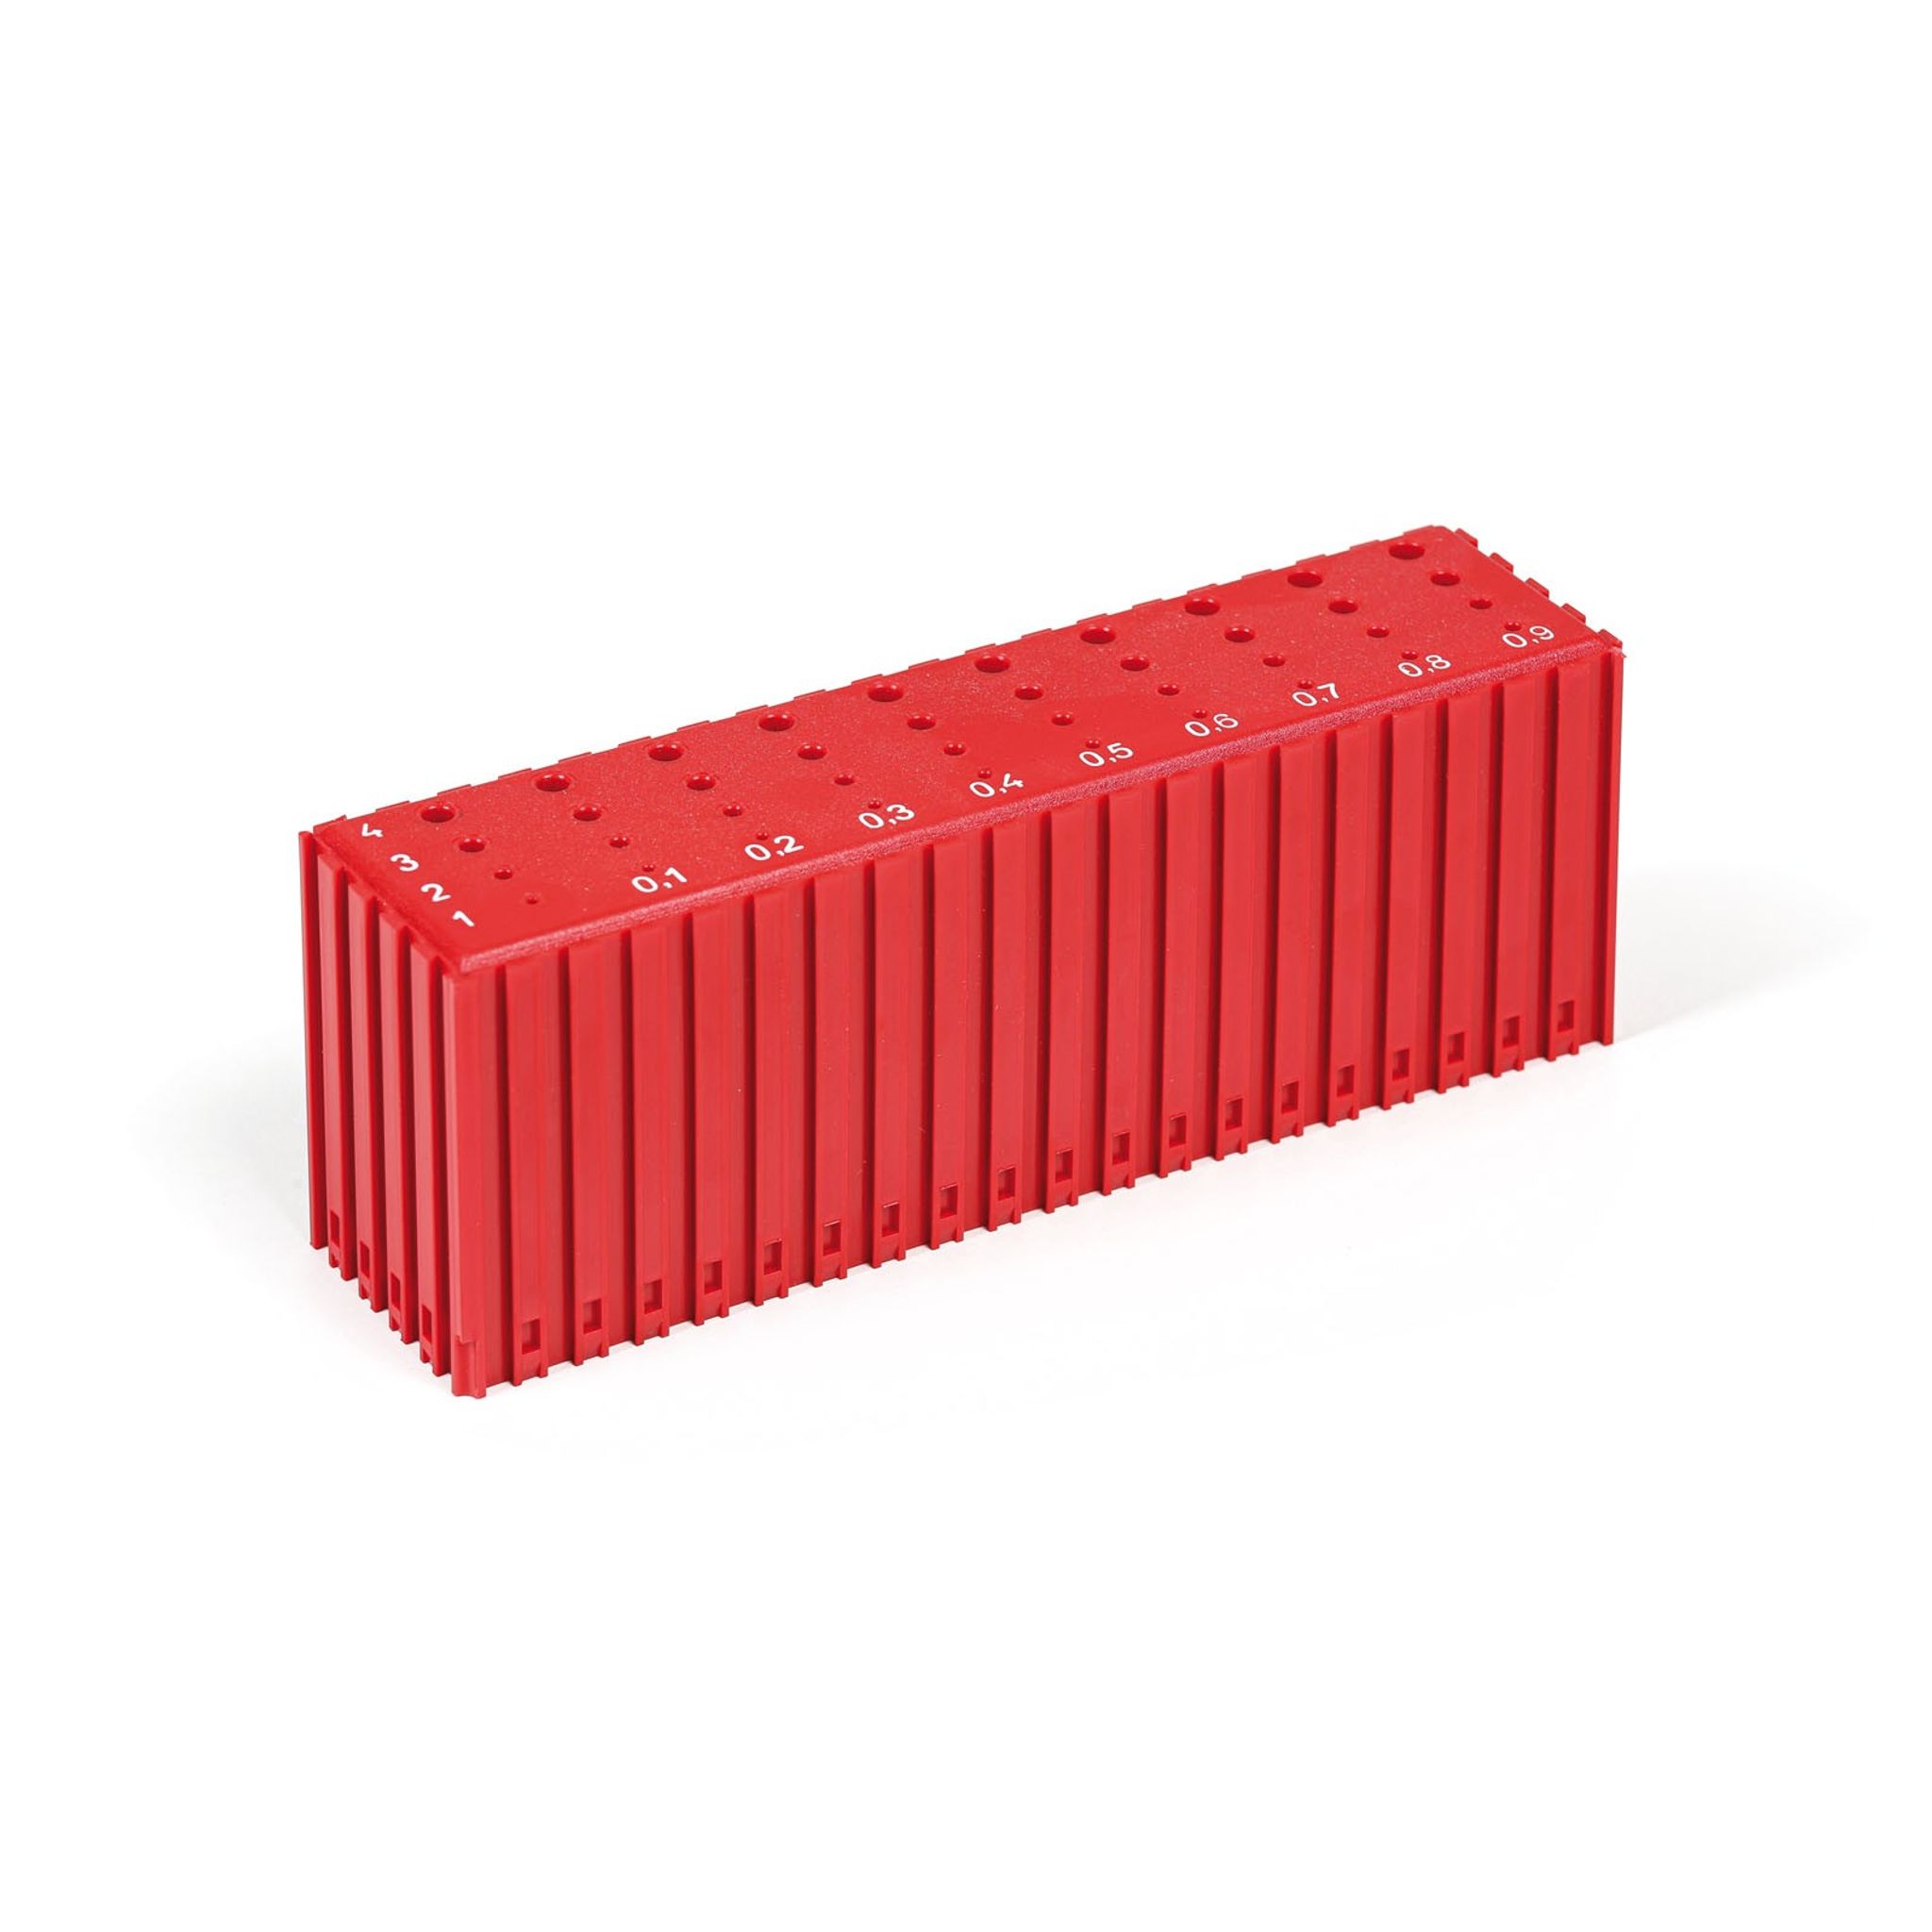 Kunststoff-Aufbewahrungsbox für Bohrer mit Durchmesser 1-4,9 mm, Modul 20x5, 40 Kavitäten, rot